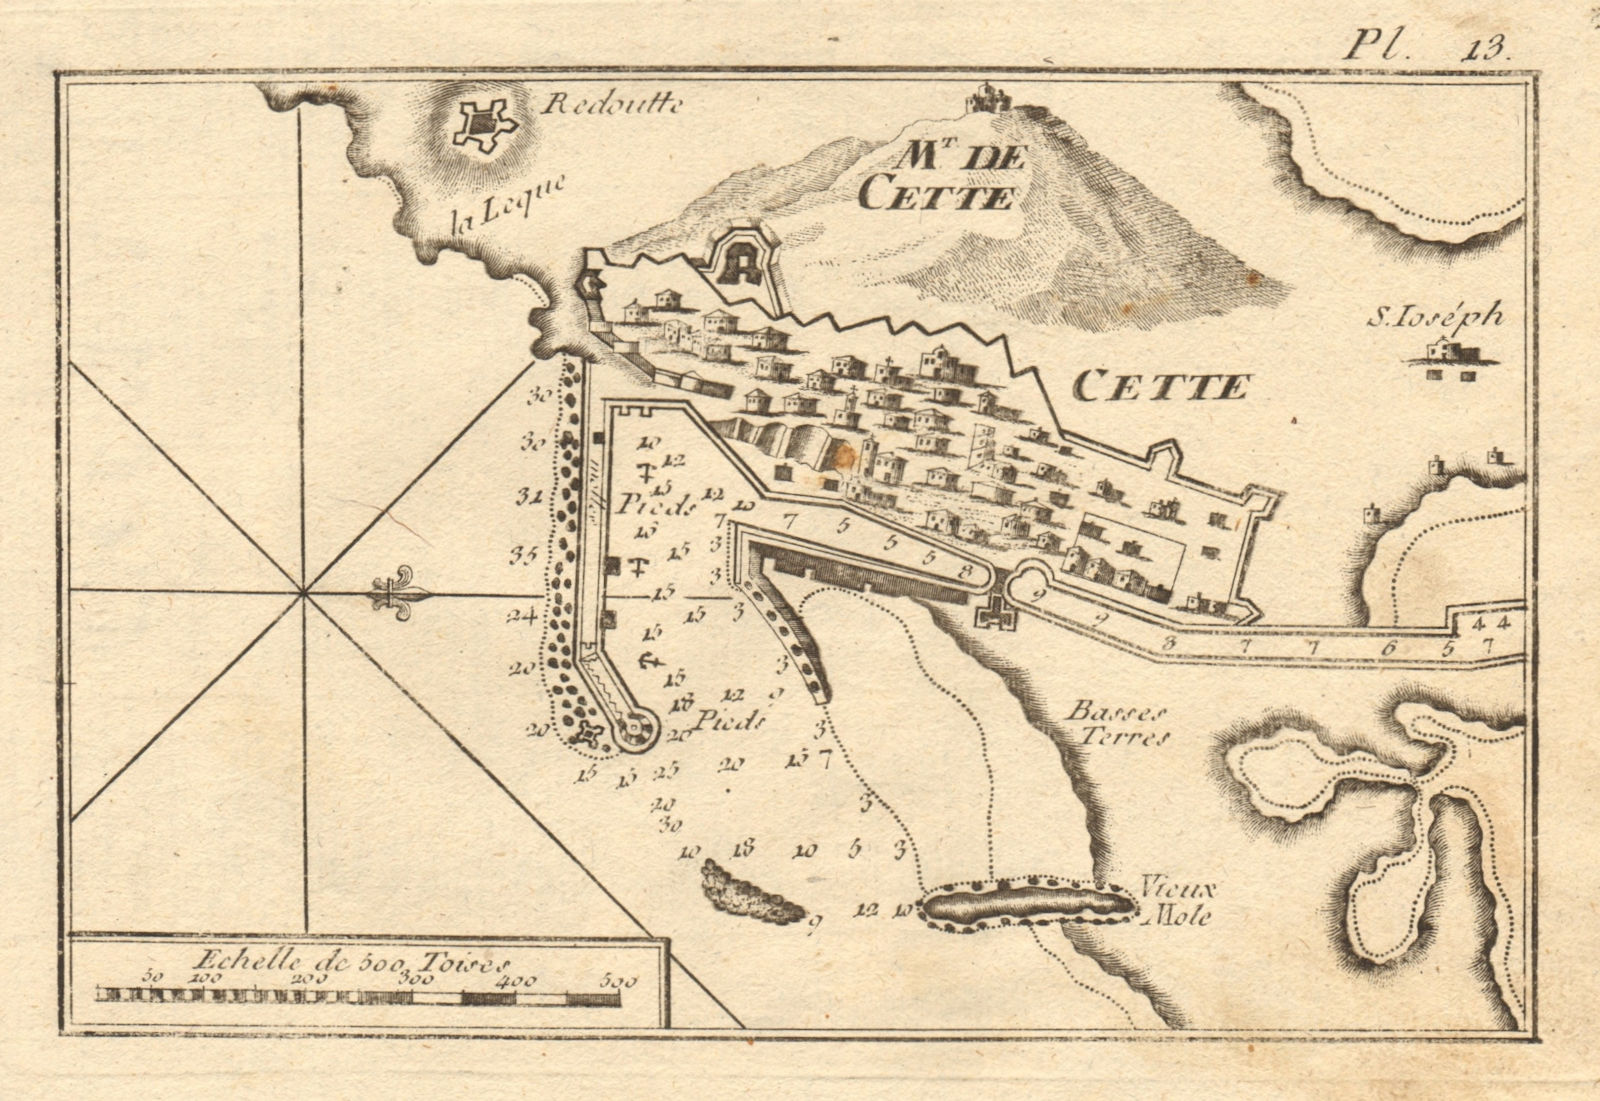 Cette. Plan of the port of Sète. Hérault, France. ROUX 1804 old antique map